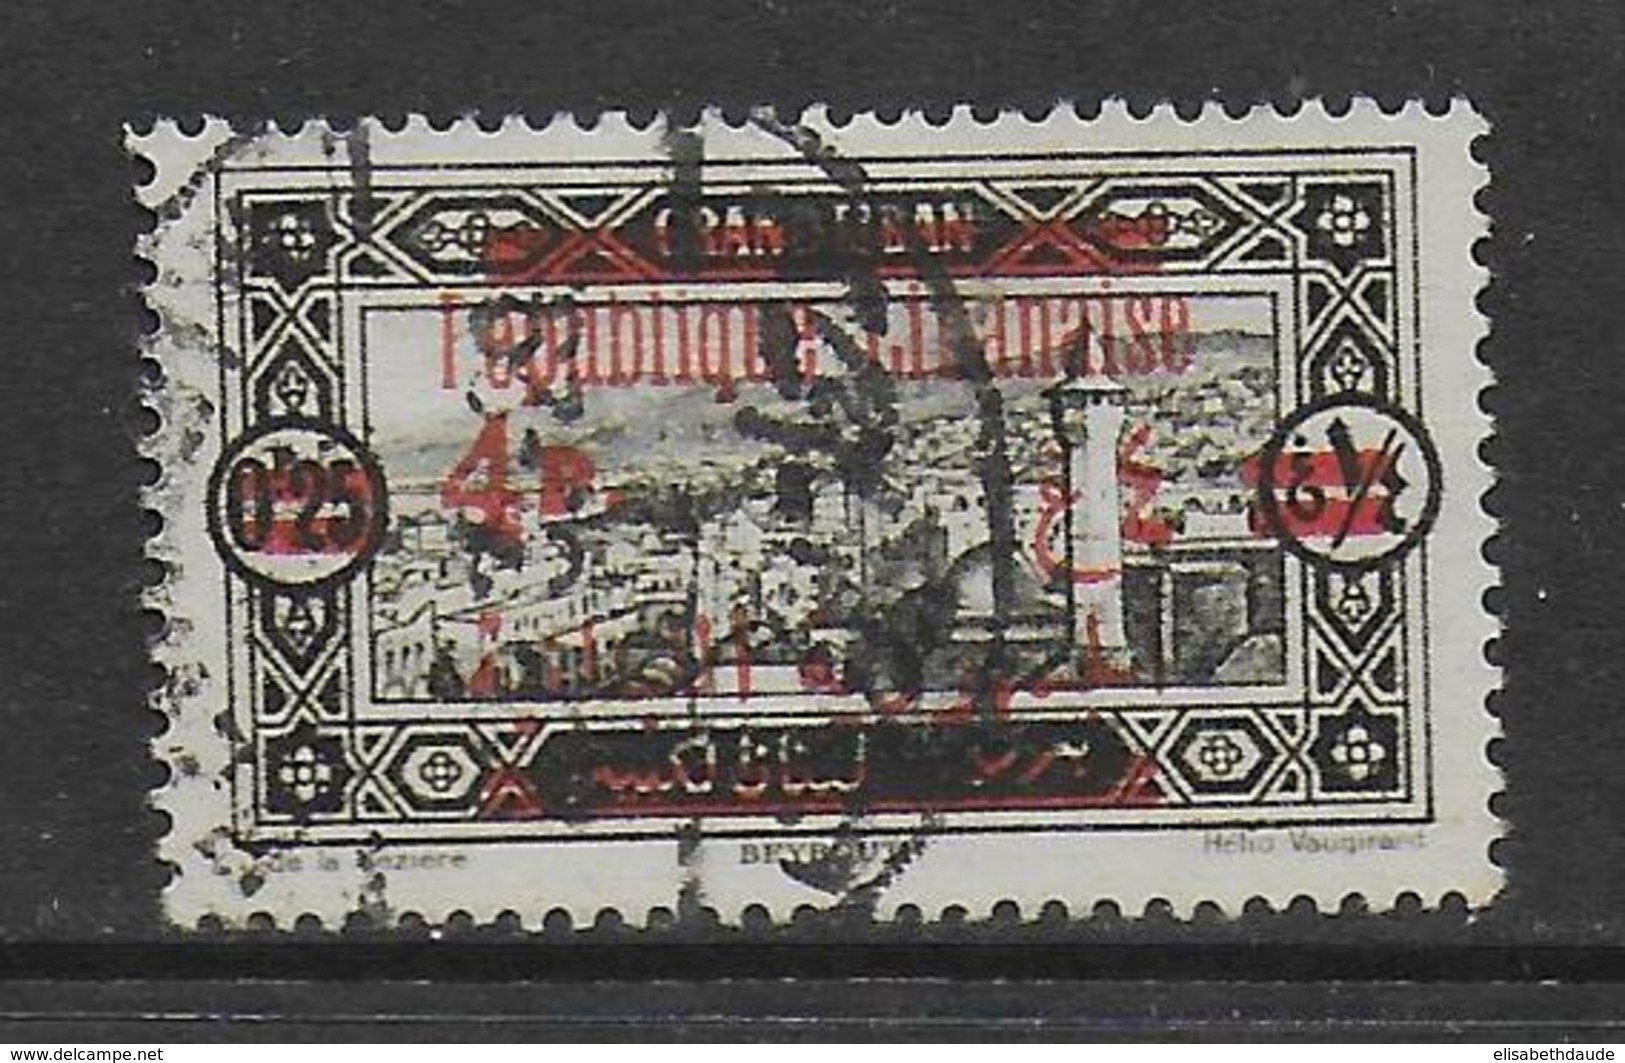 GRAND-LIBAN - 1928 - YVERT N°119 SURCHARGE RECTO-VERSO OBLITERE - COTE = 80 EUR. - Oblitérés